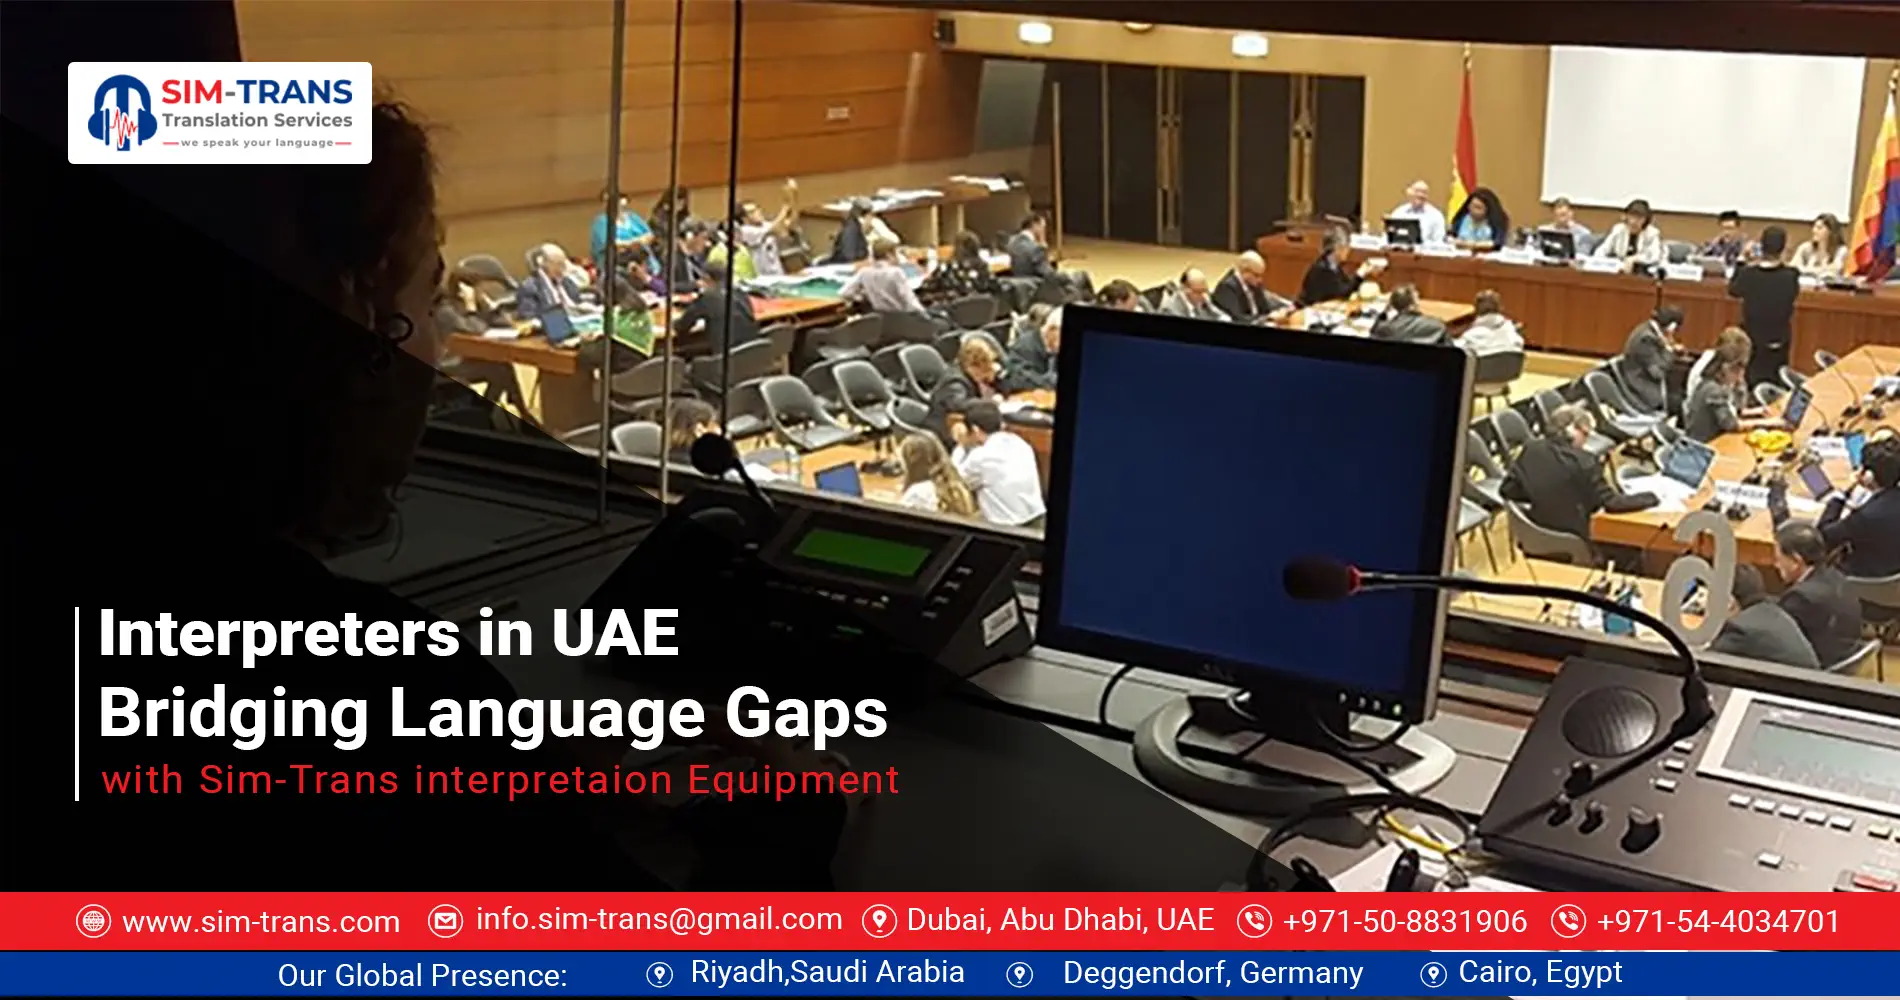 Interpreters in Dubai: Bridging Language Gaps with Sim-Trans